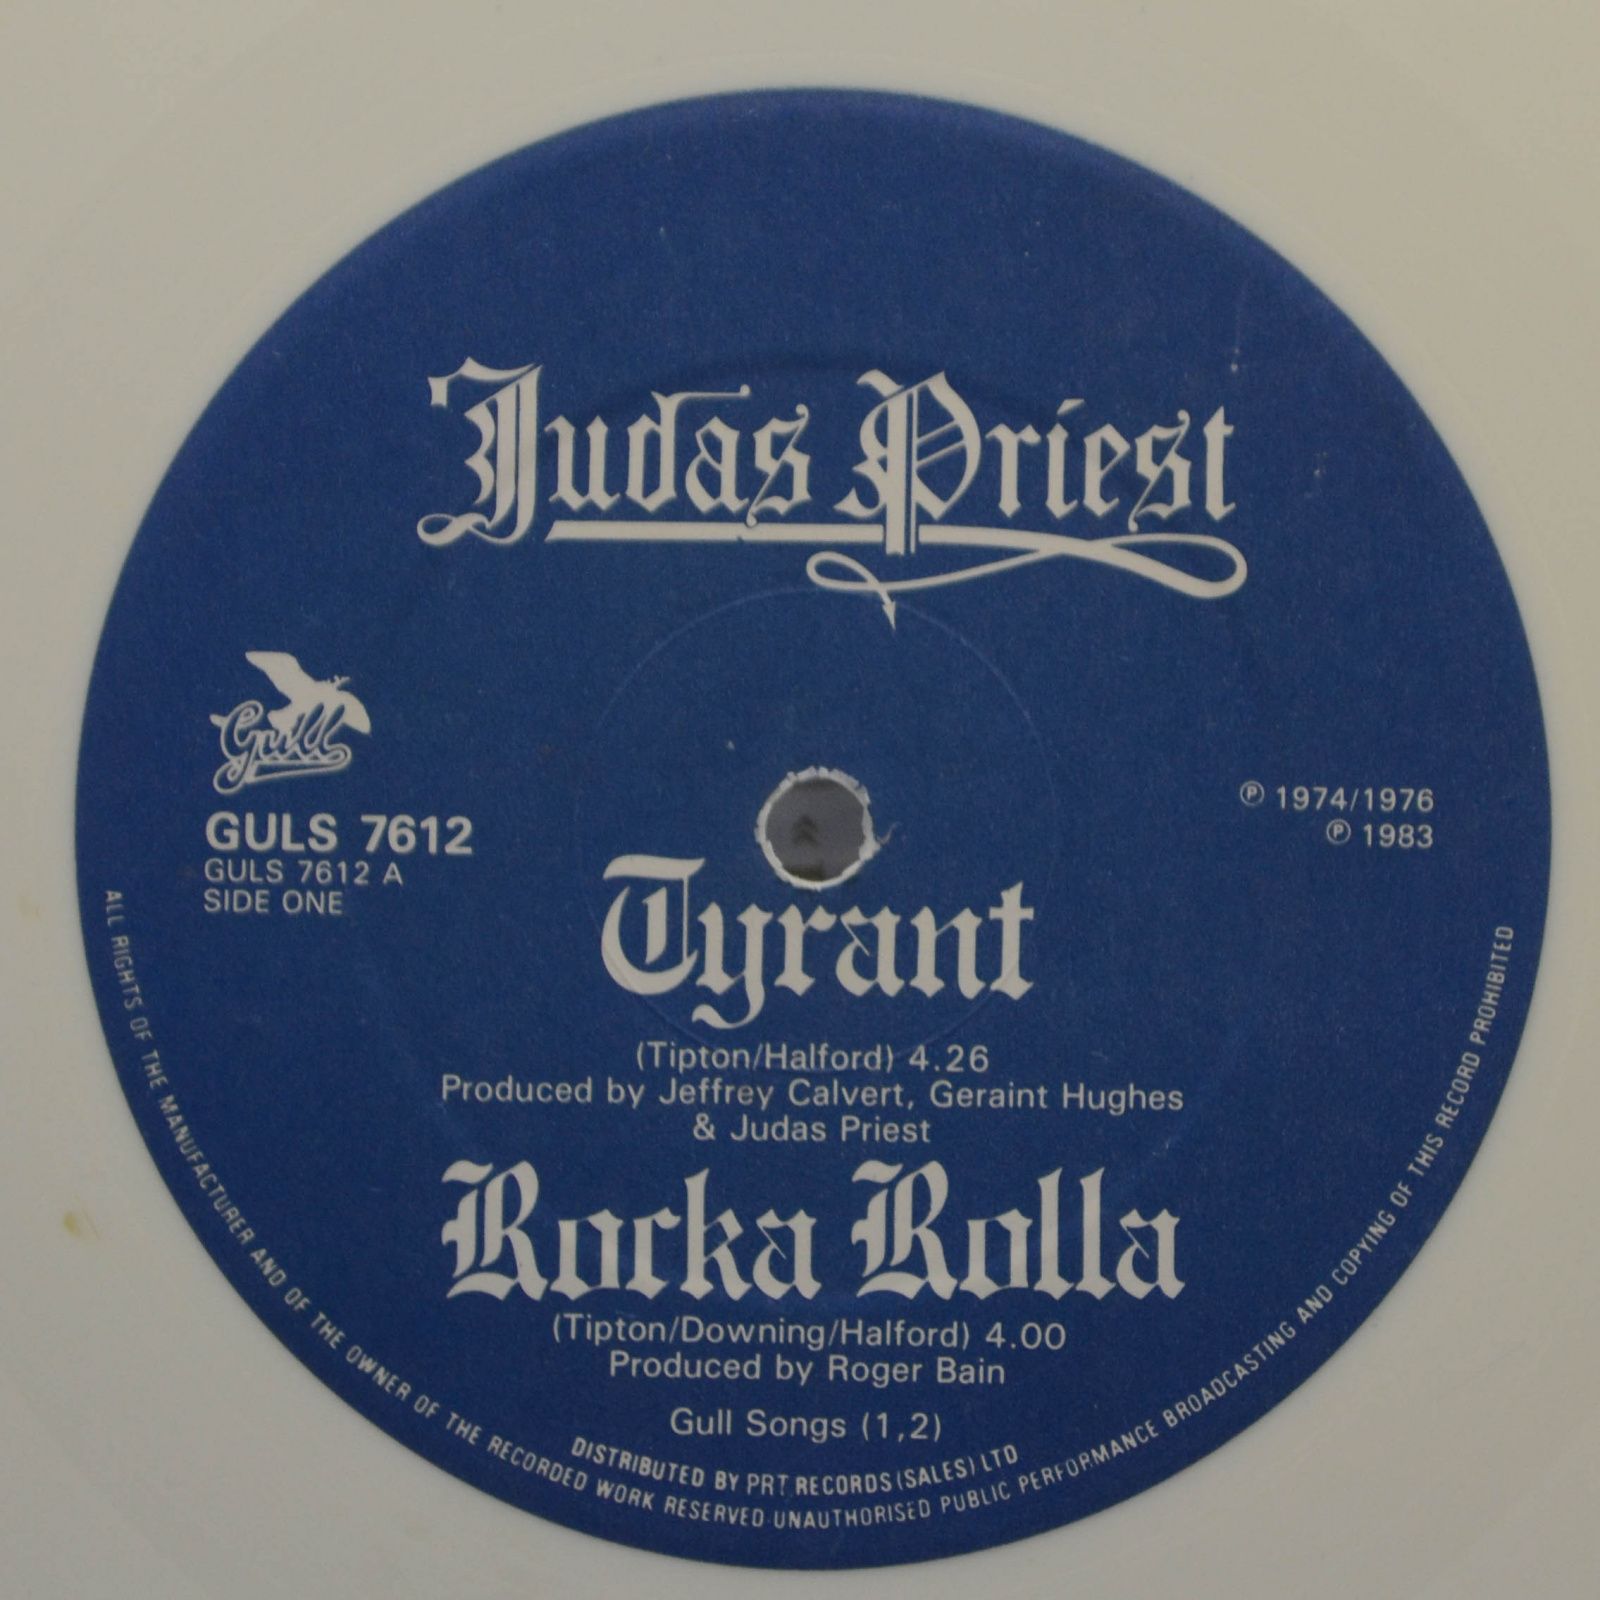 Judas Priest — Tyrant, 1983